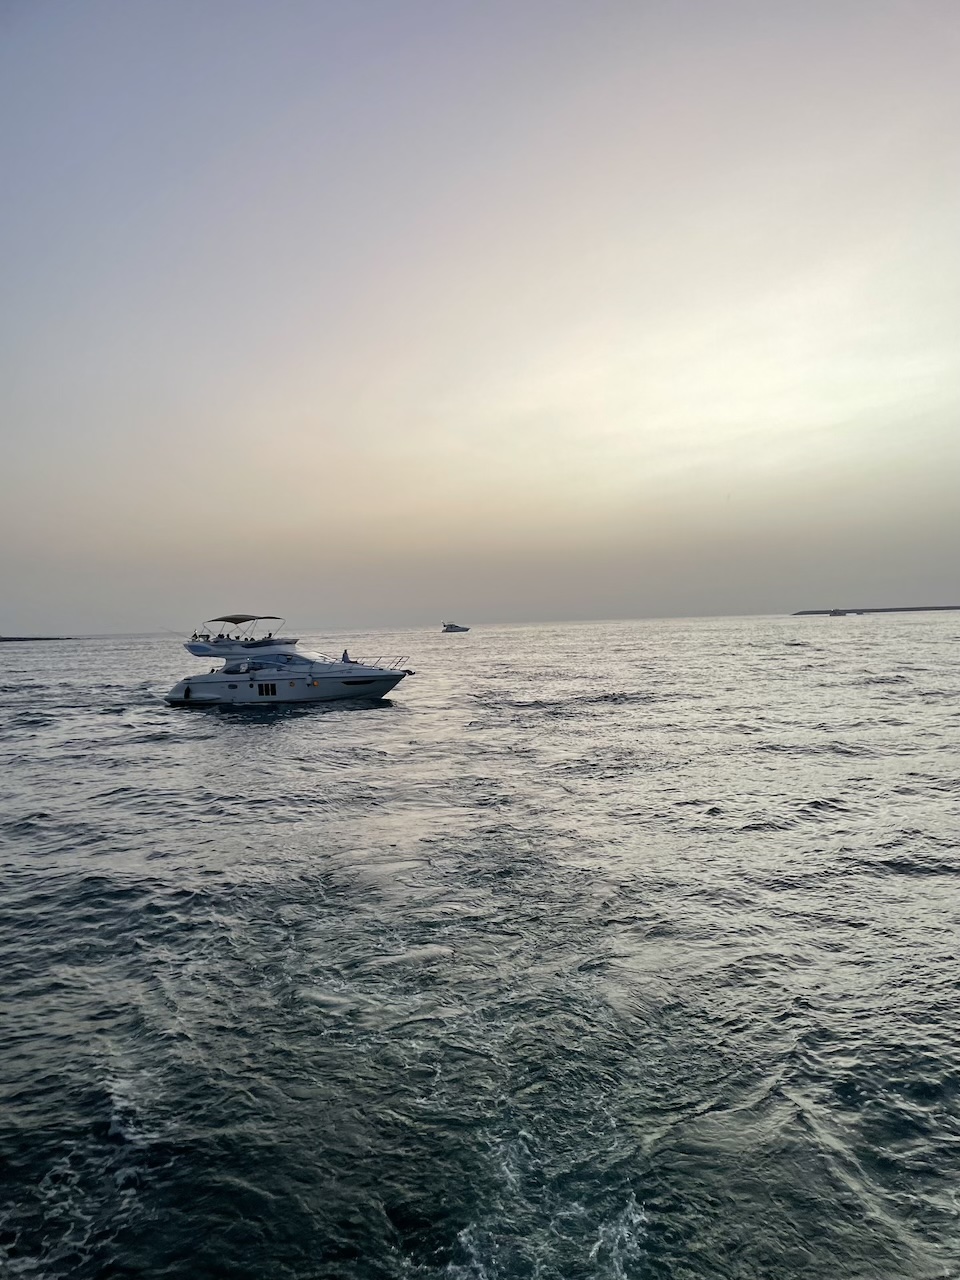 Alquiler de yate para fiestas en Dubái: Una celebración inolvidable en el agua